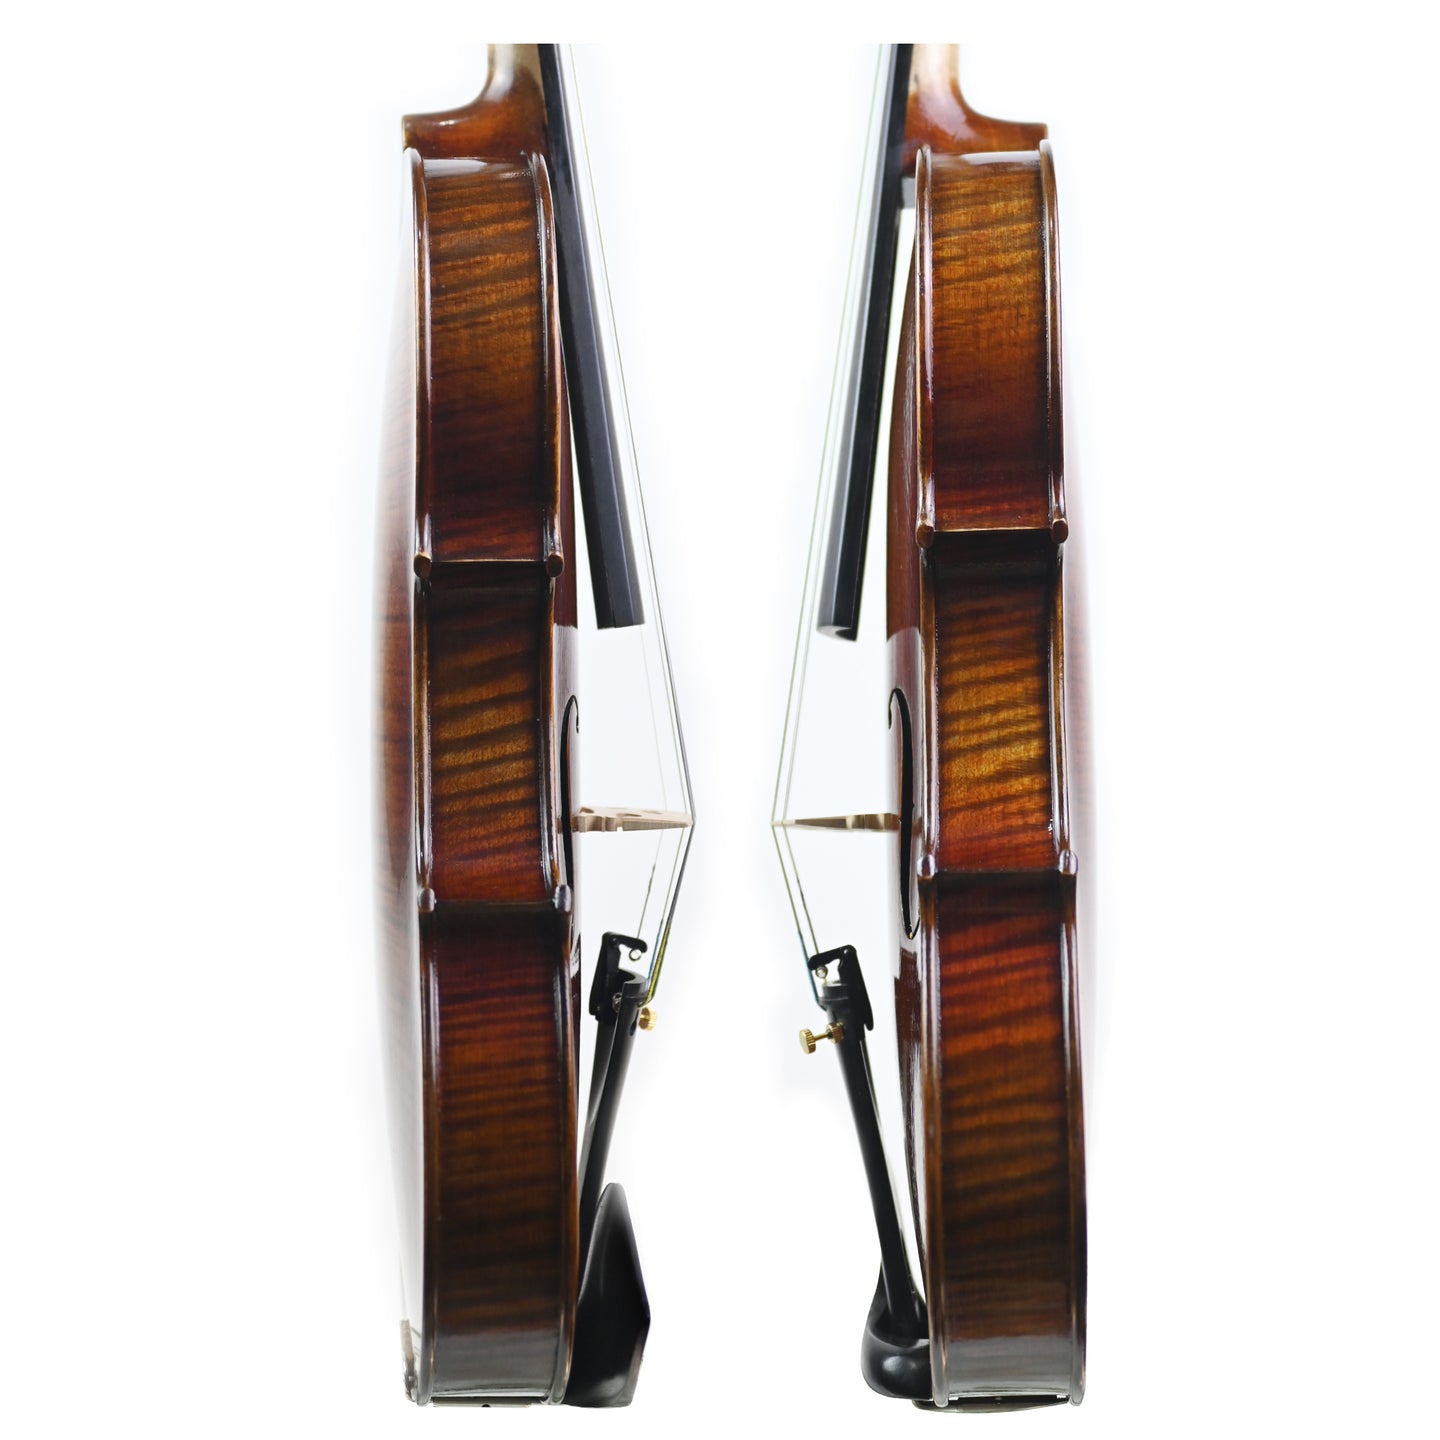 7020 beginner violin rib